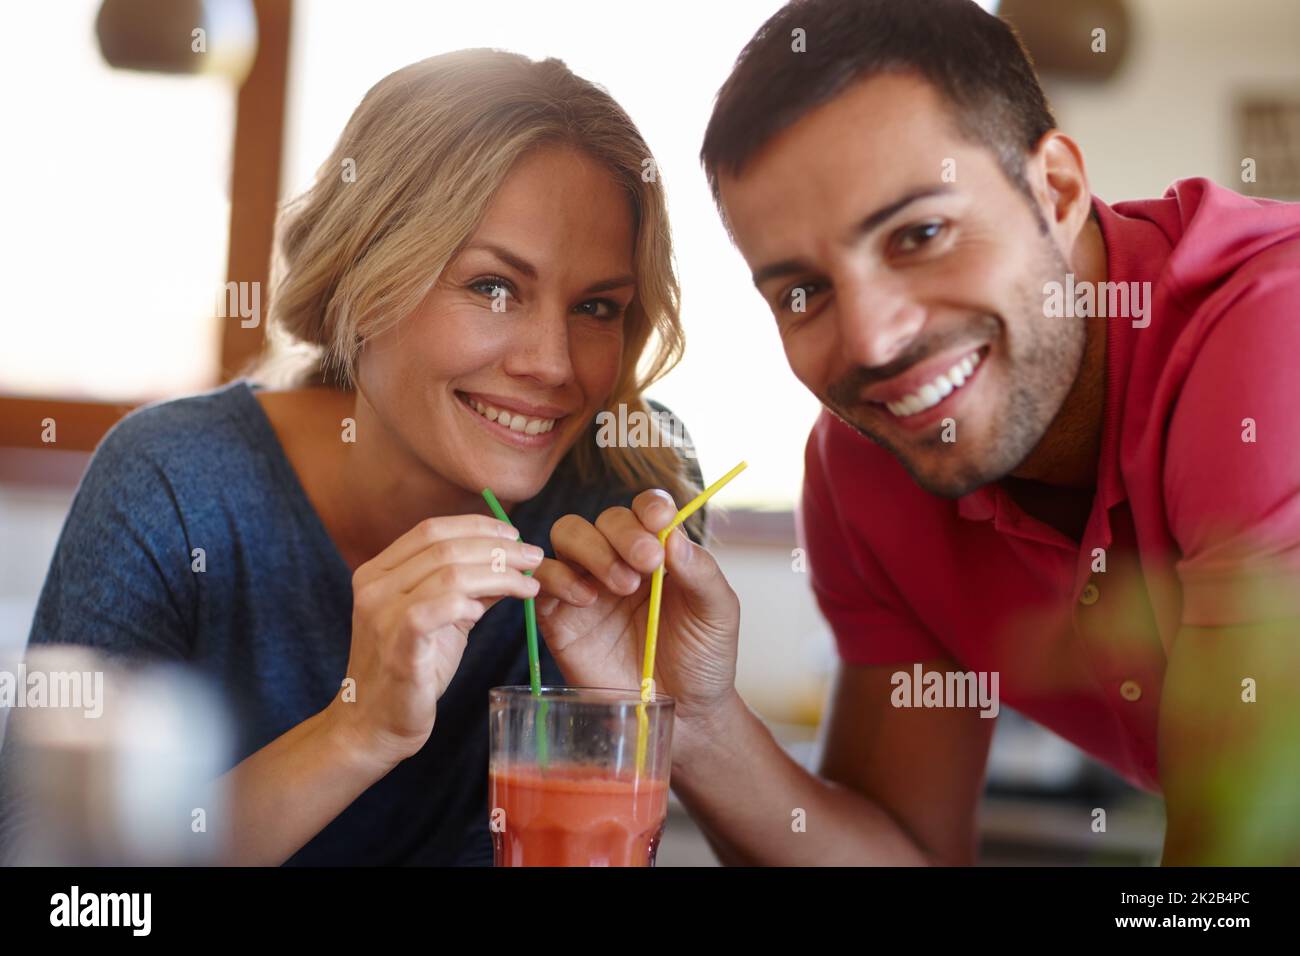 Il romanticismo della vecchia scuola. Scatto di una giovane coppia felice che condivide un milkshake. Foto Stock